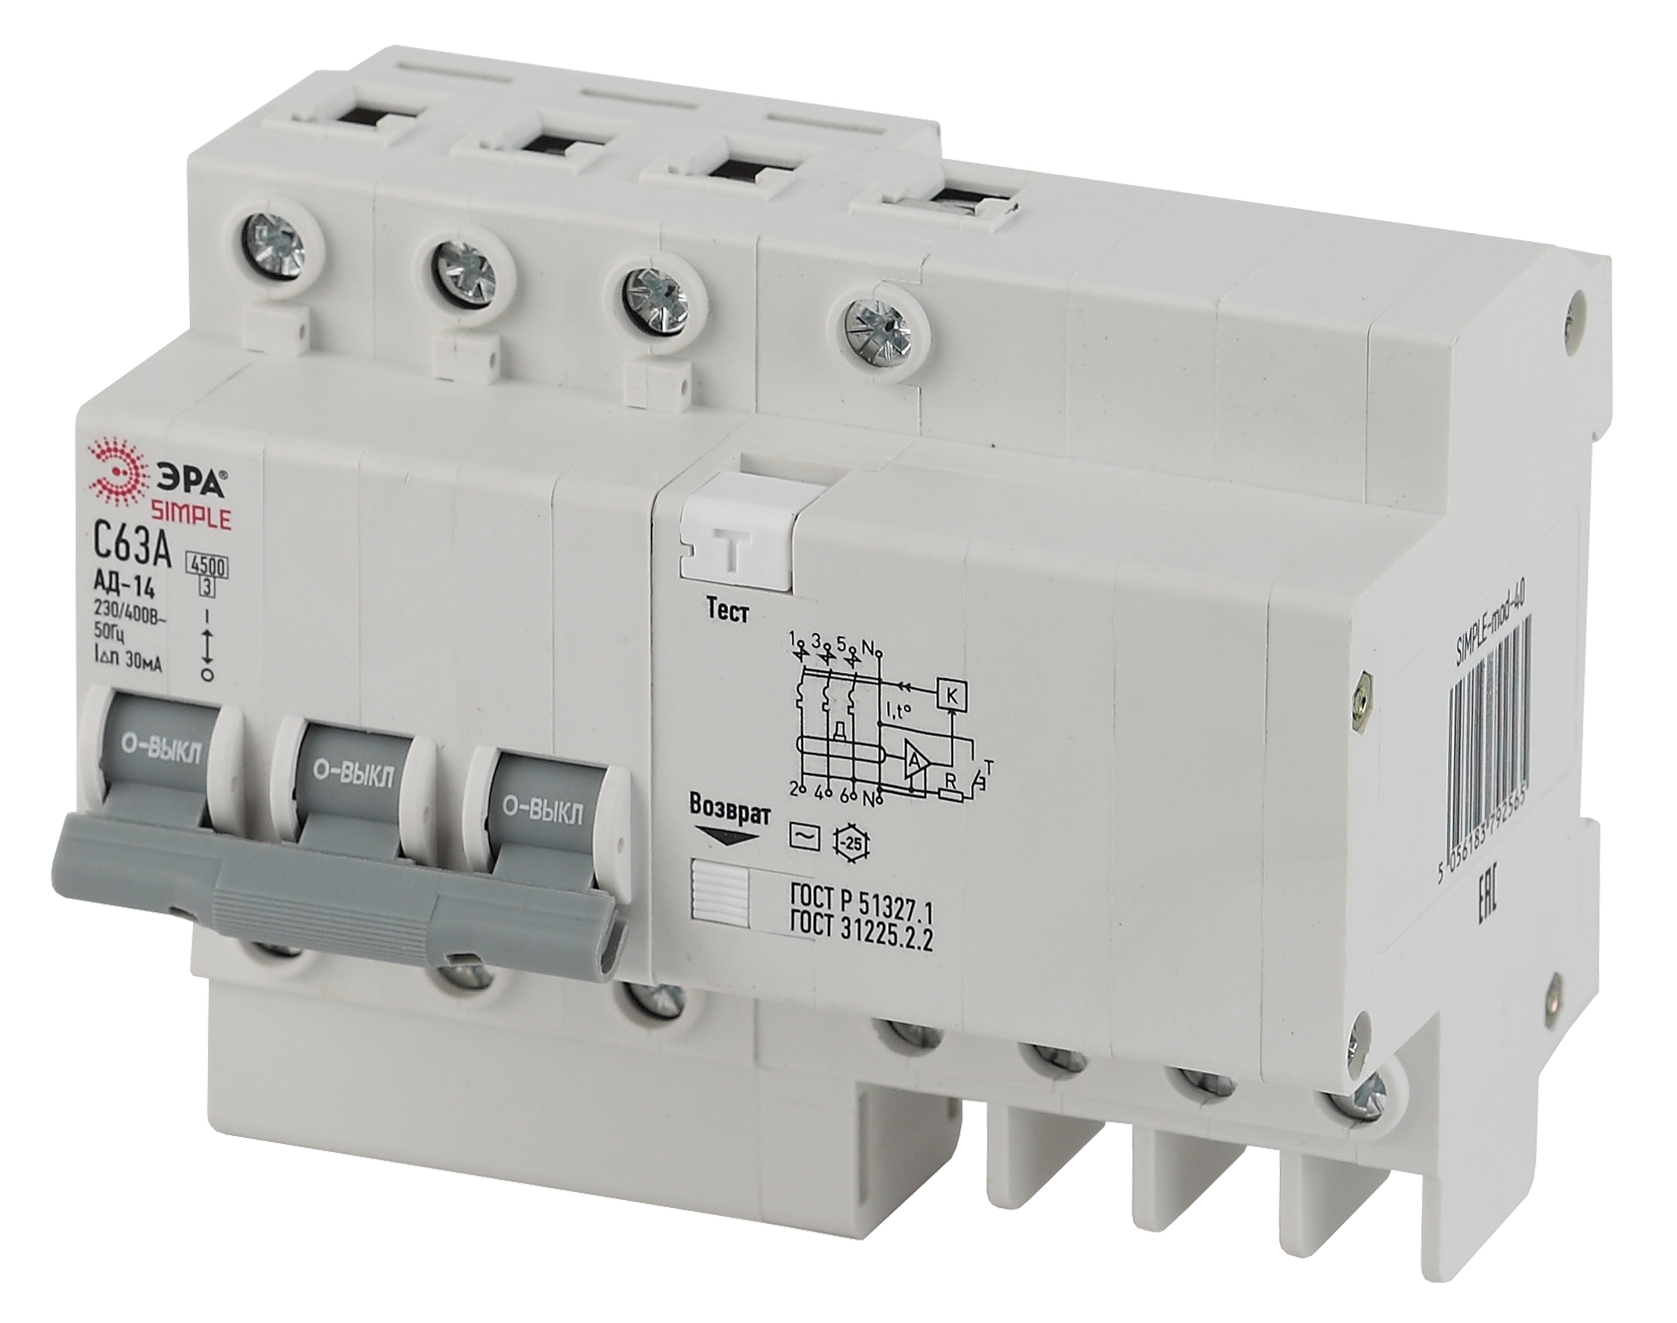 SIMPLE-mod-39 ЭРА SIMPLE Автоматический выключатель дифференциального тока 3P+N 40А 30мА тип АС х-ка